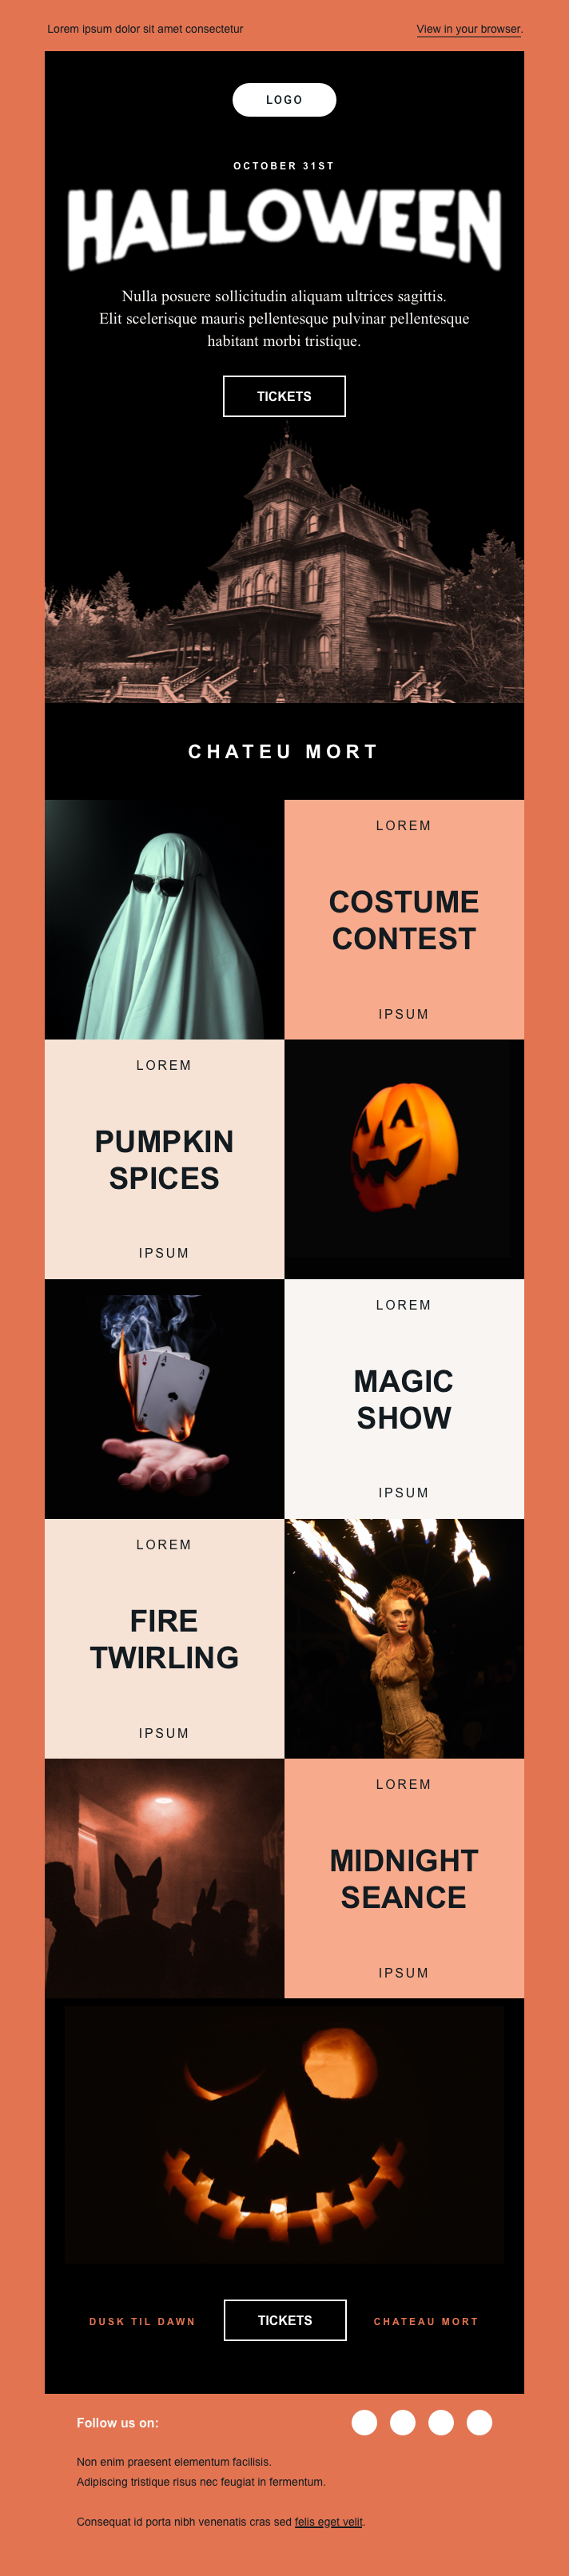 E-Mail-Halloween-Template von Mailjet